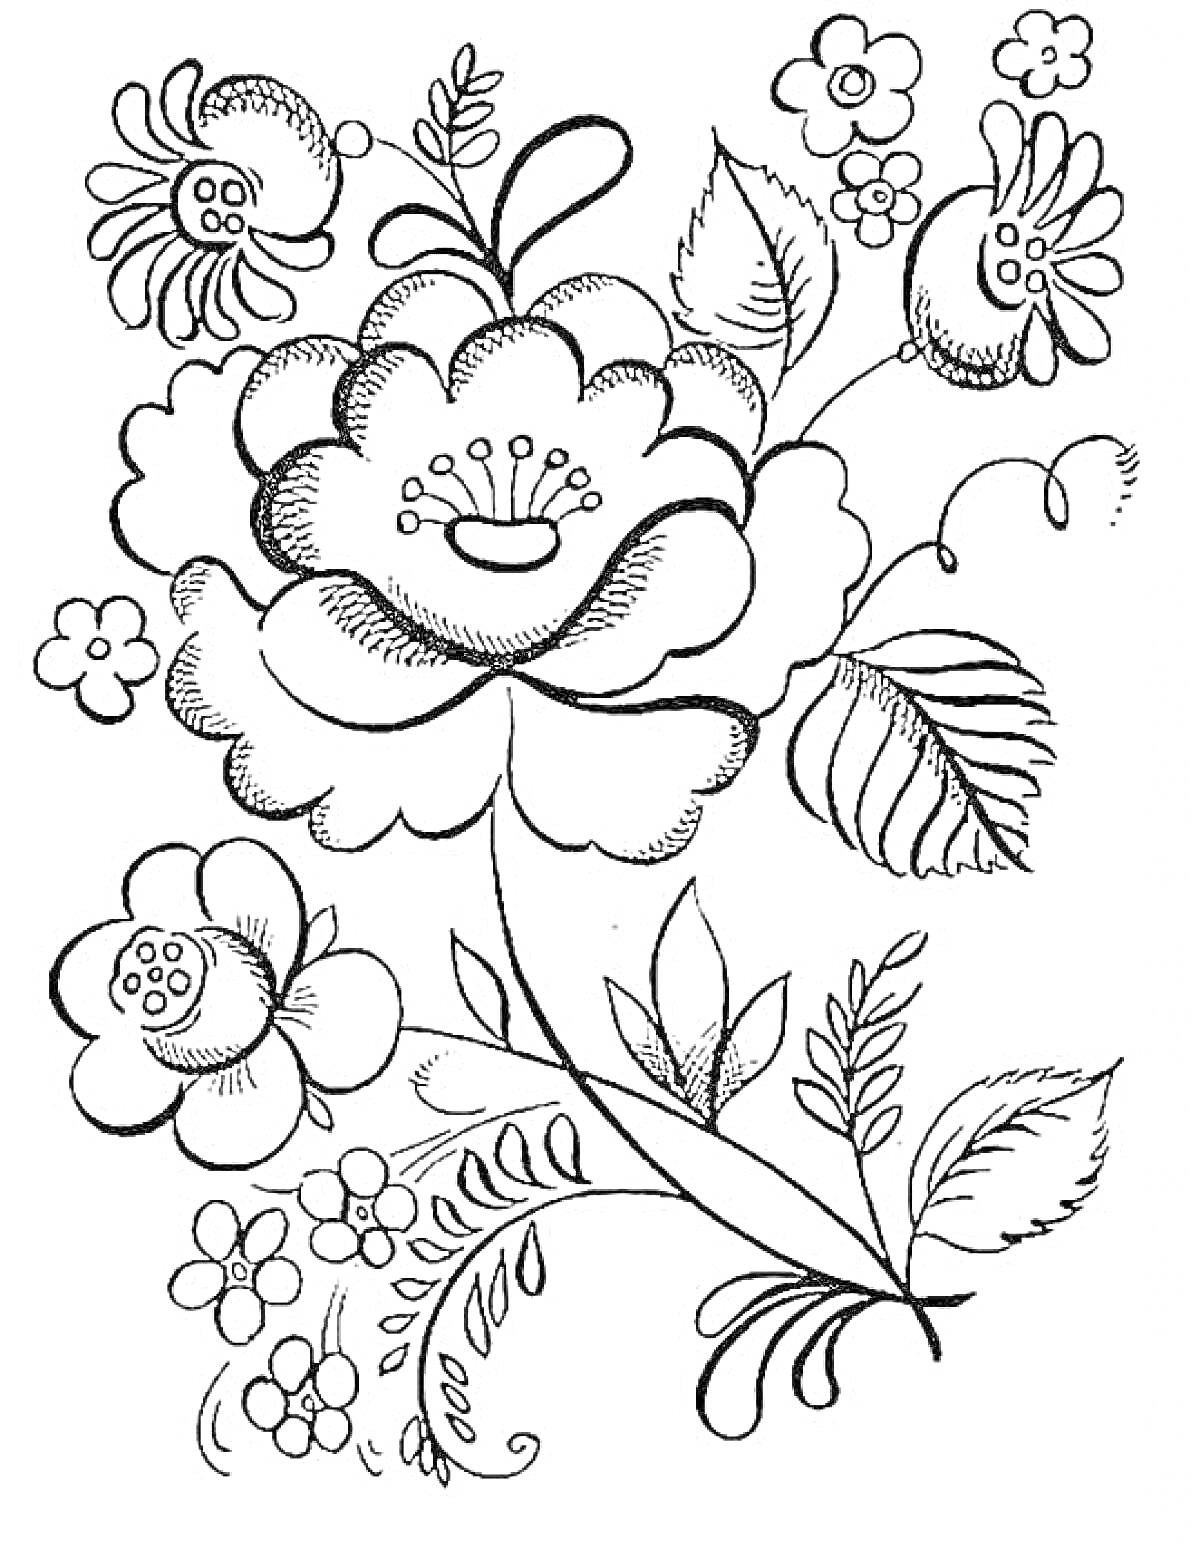 Цветочный рисунок в стиле Гжель с большими и маленькими цветами, листьями и завитками